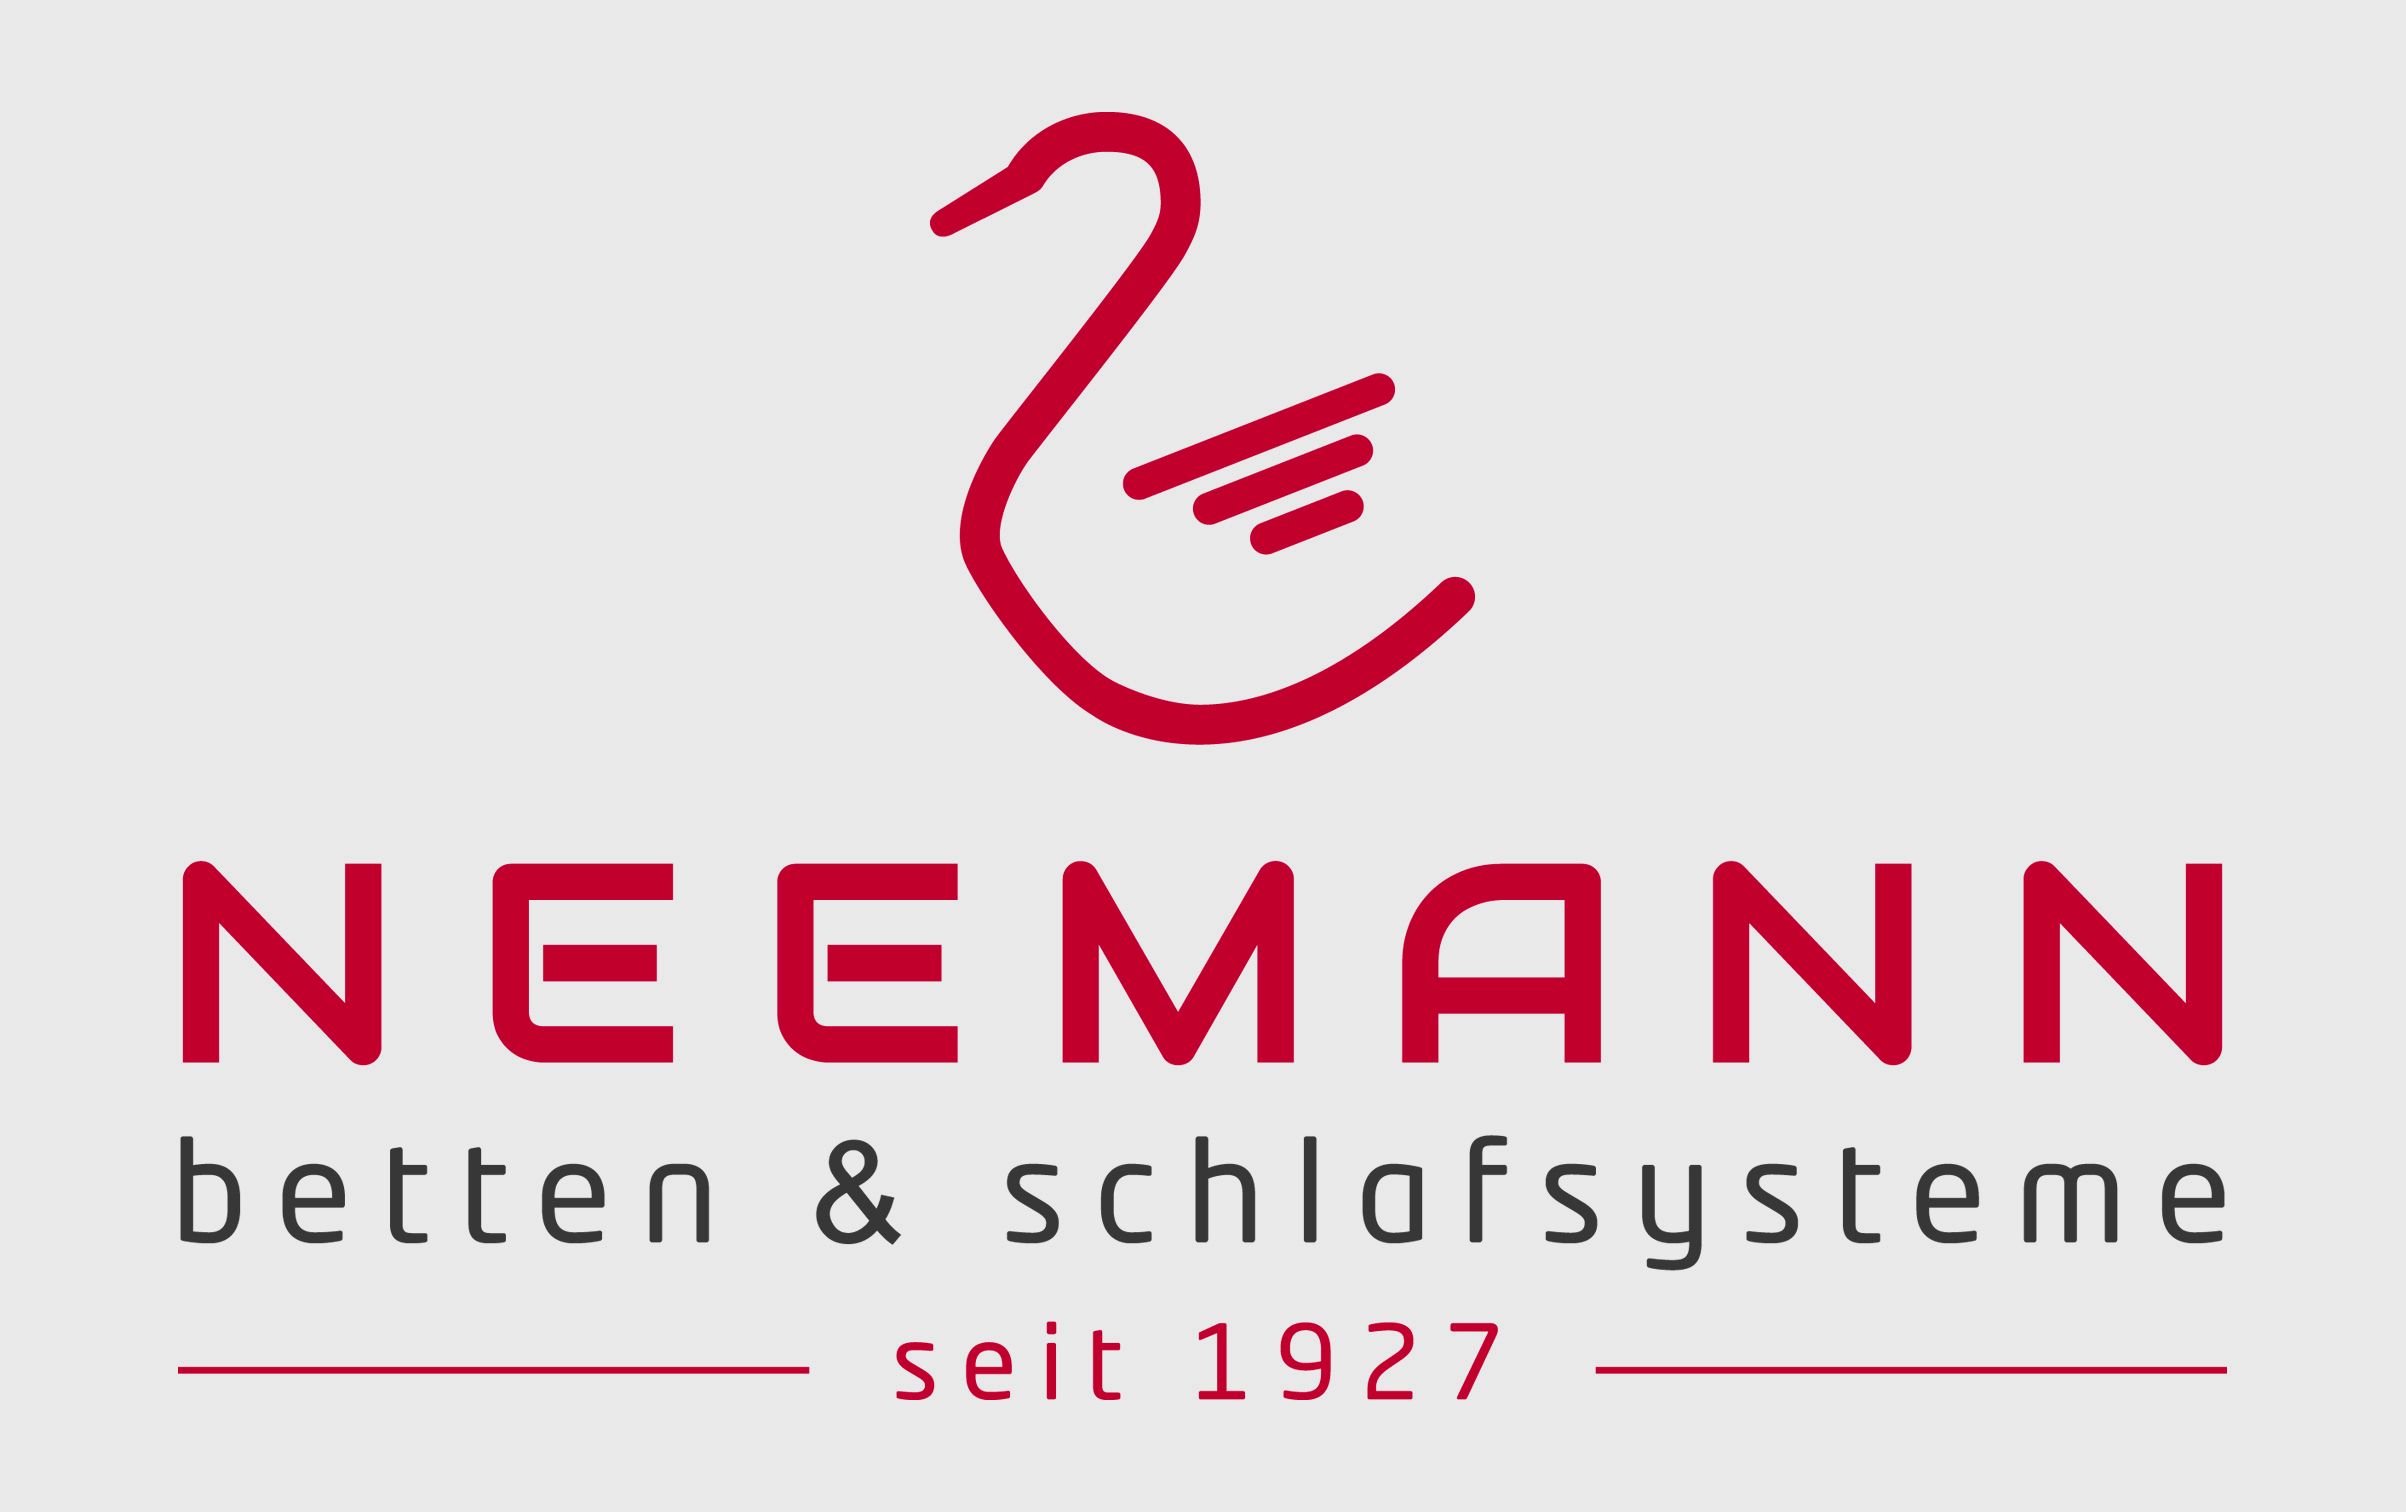 Bettenhaus Neemann